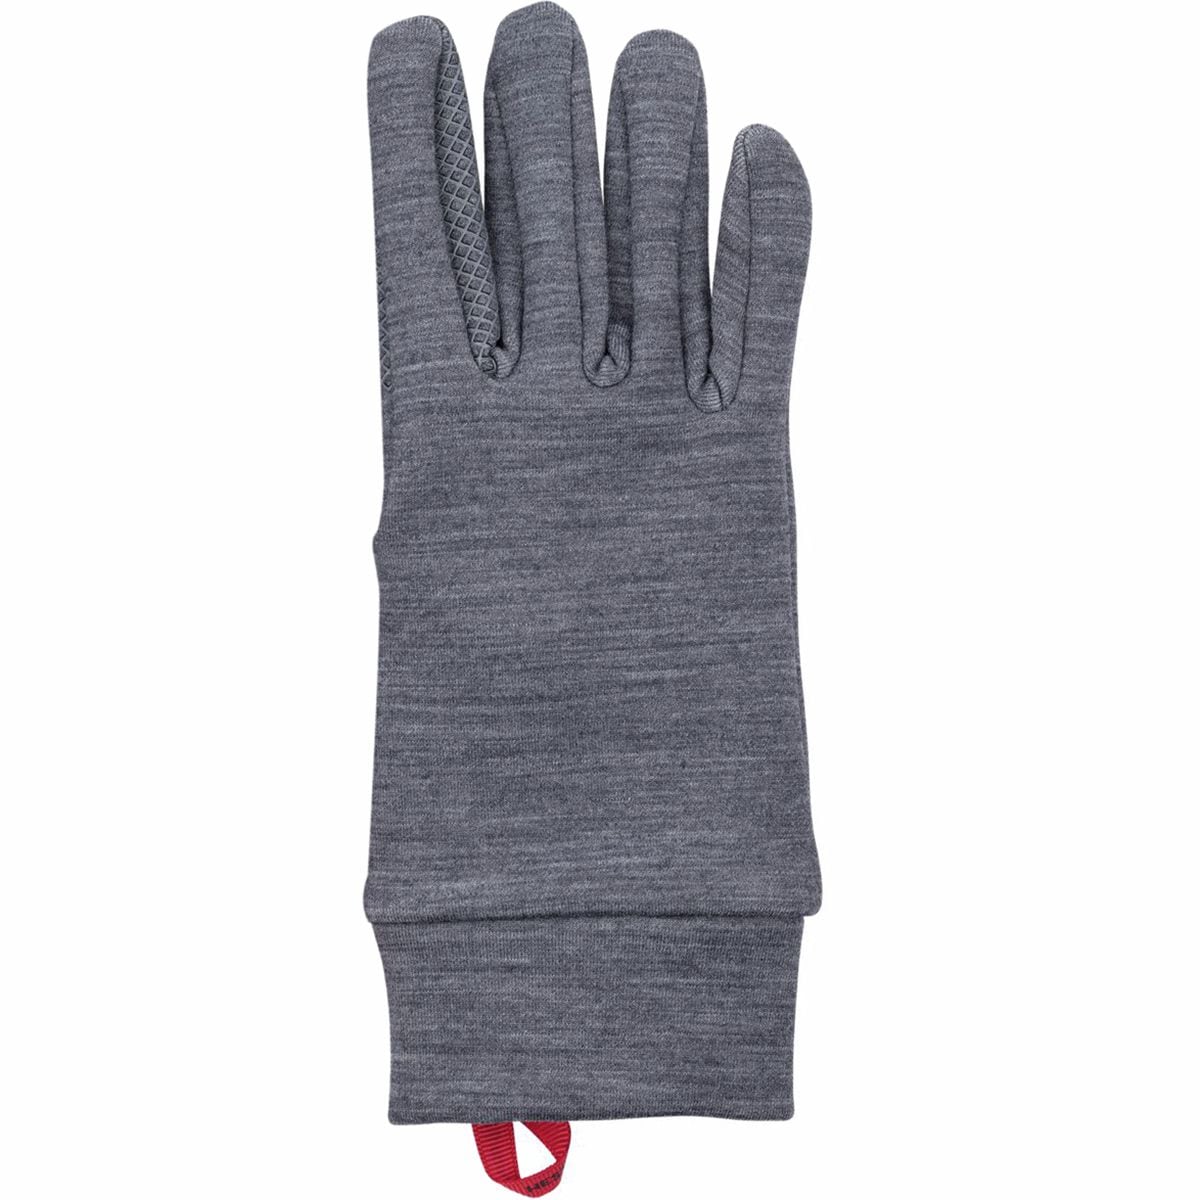 Hestra Touch Warmth Glove Liner